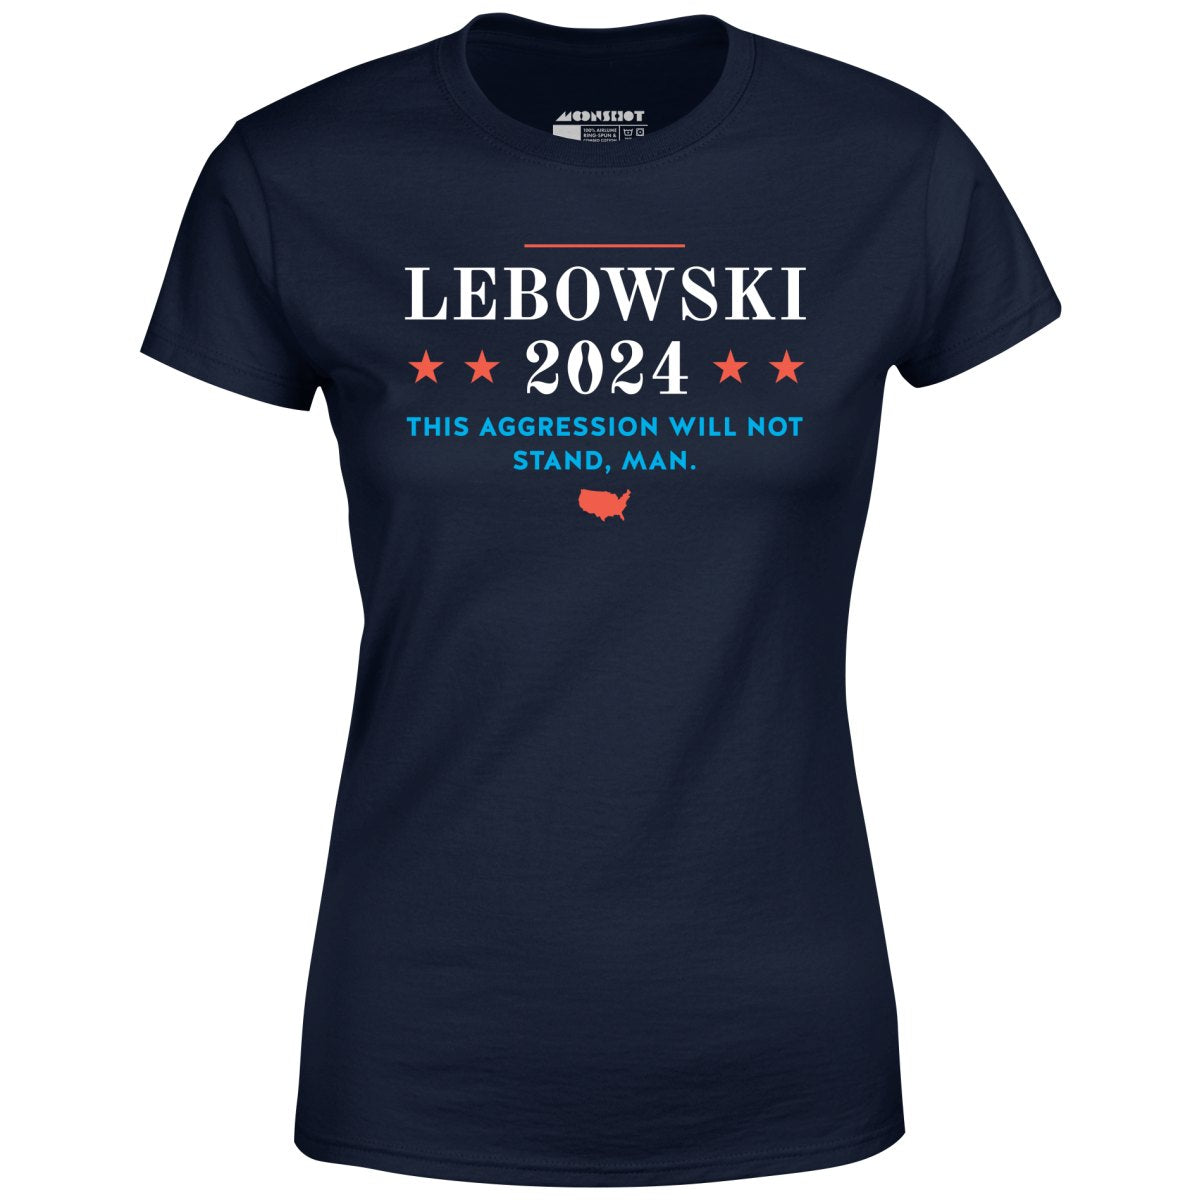 Lebowski 2024 - Women's T-Shirt